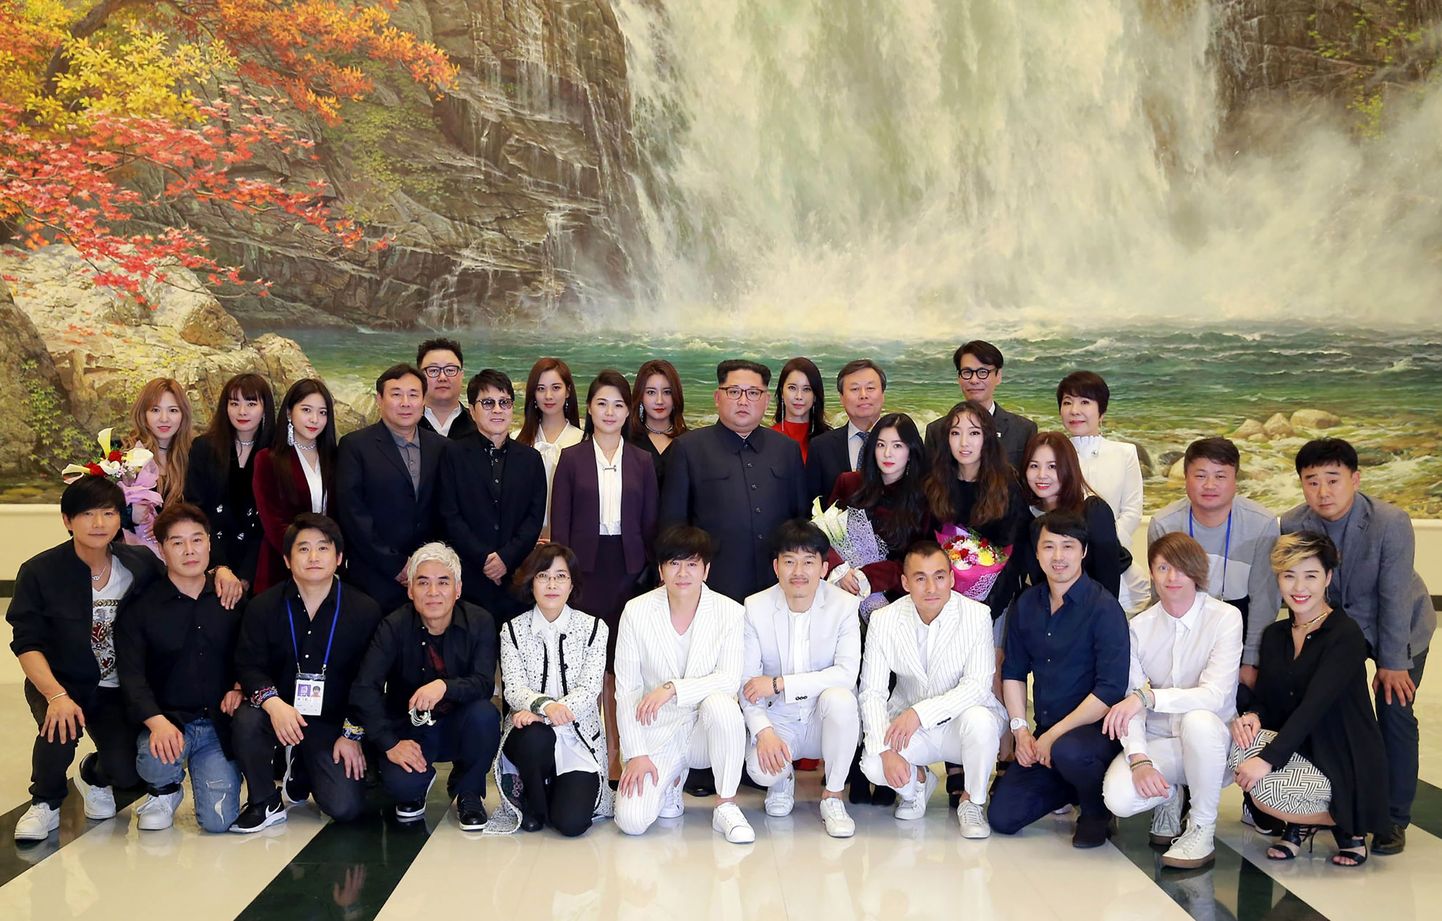 Kim Jong-un poseerimas koos Lõuna-Korea kultuuridelegatsiooniga, kelle hulgas olid ka noored popstaarid